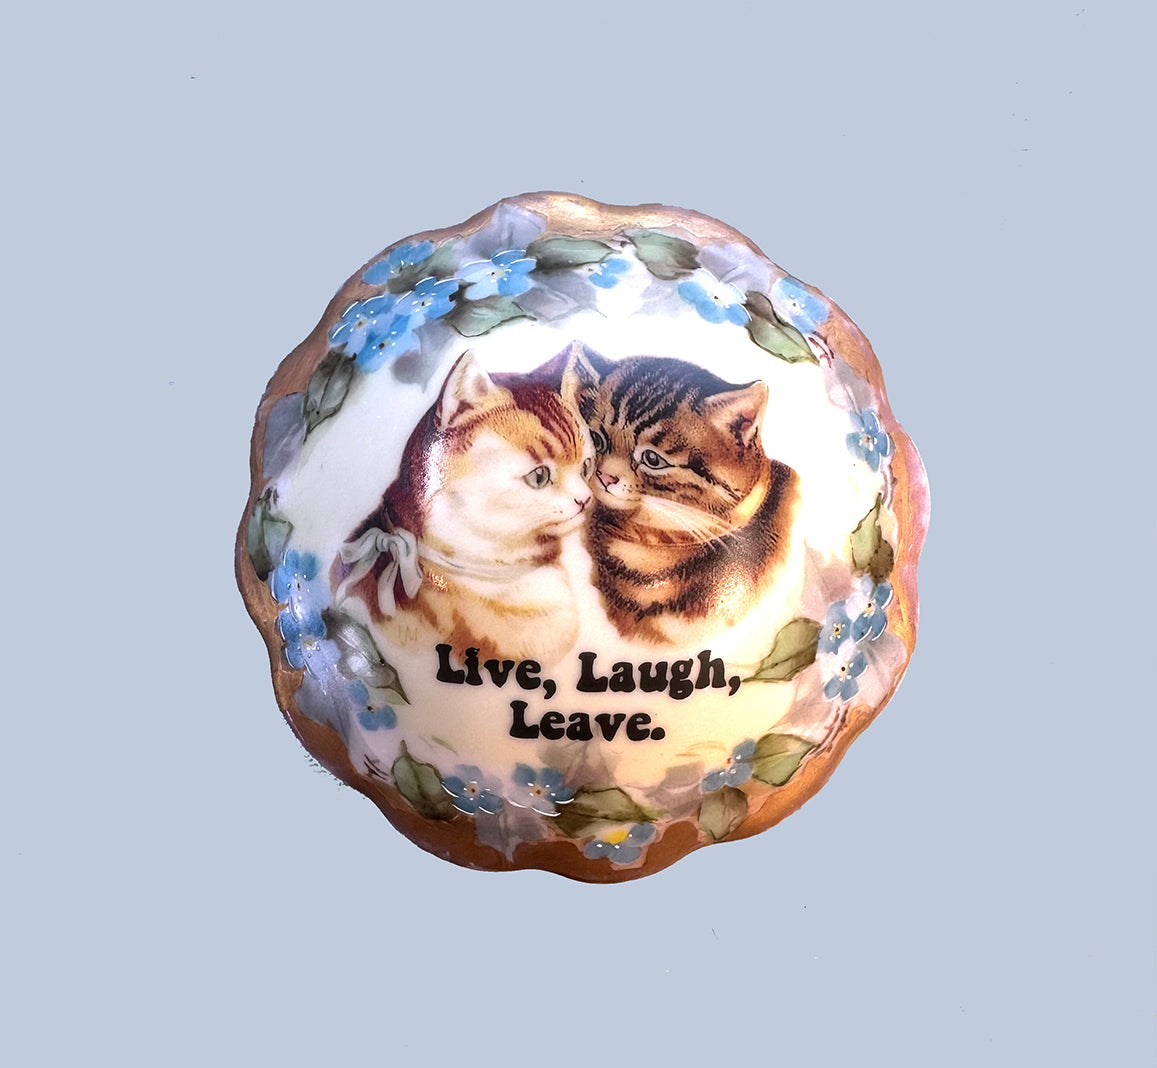 Antique Limoges Trinket Box - Cat - "Live, Laugh, Leave."